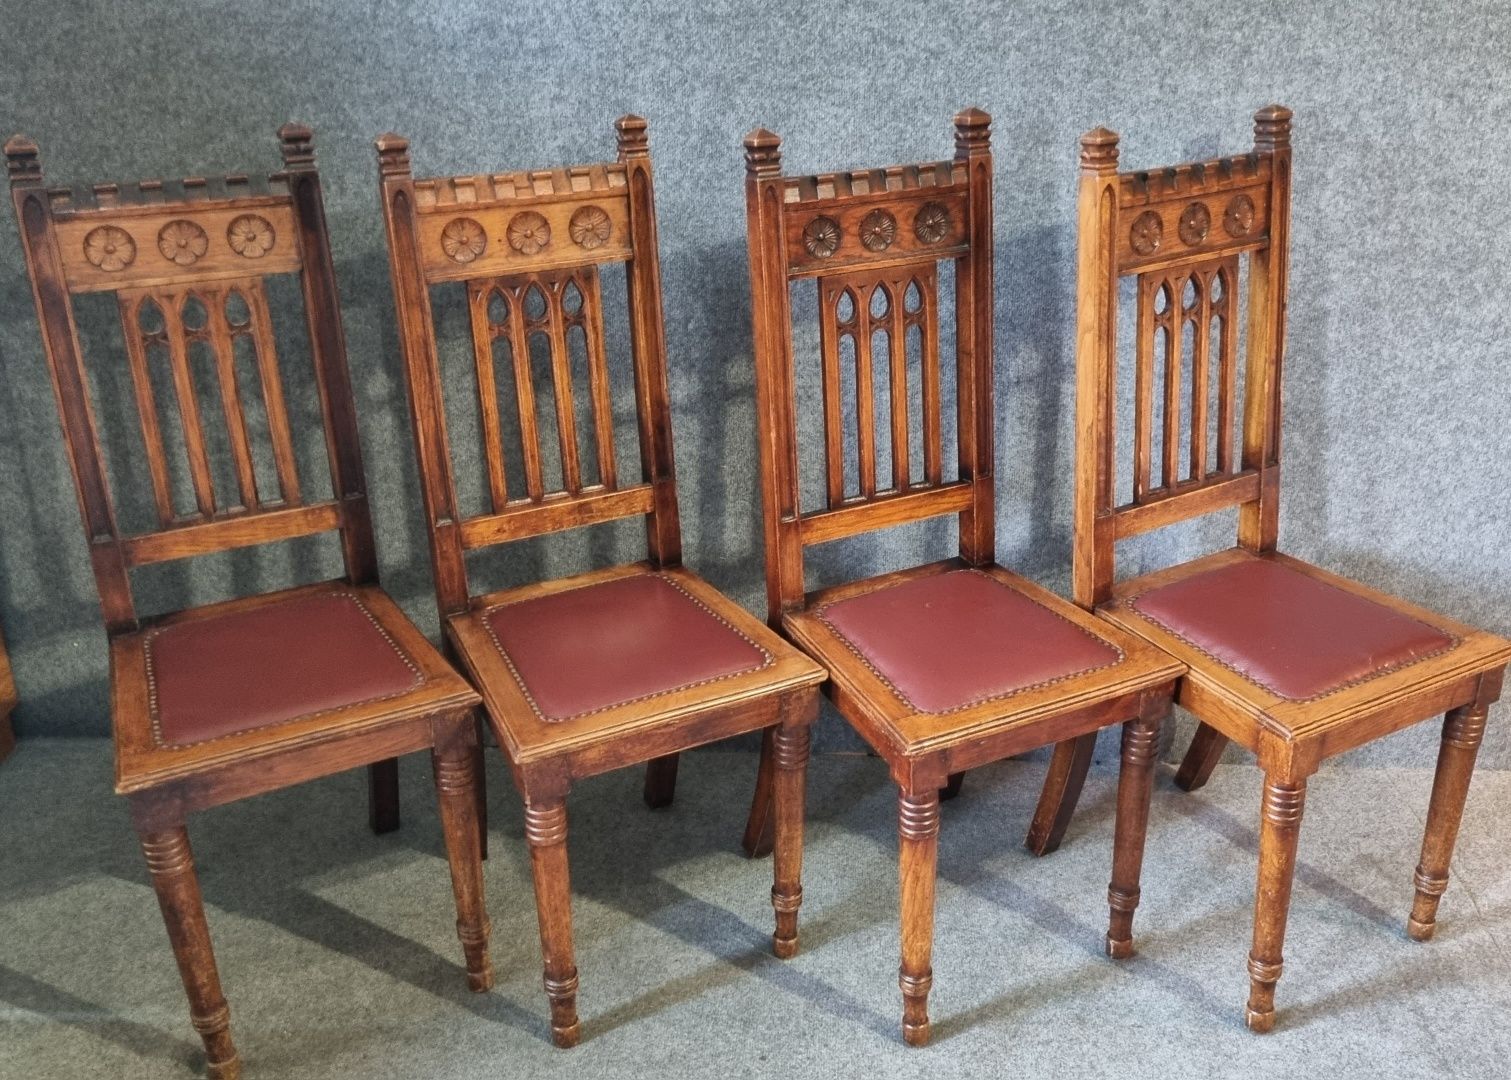 Duńskie Krzesła 4 sztuki. W stylu XIXw